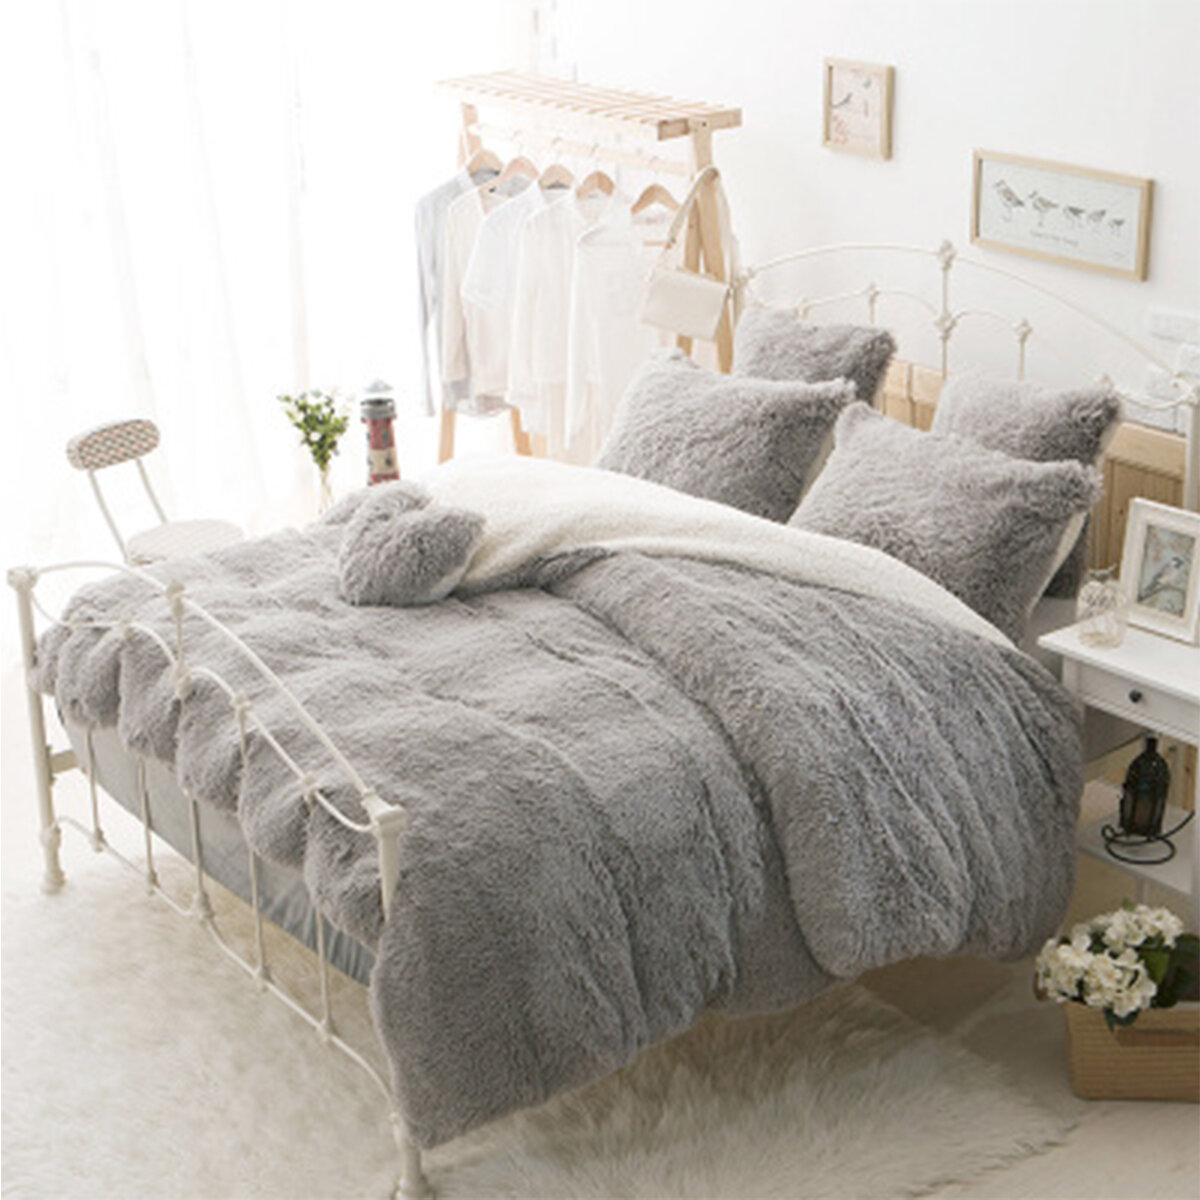 

Large Soft Теплое мохнатое пухлое плюшевое одеяло двойного размера Диванный диван Одеяла Одеяло Постельные принадлежност